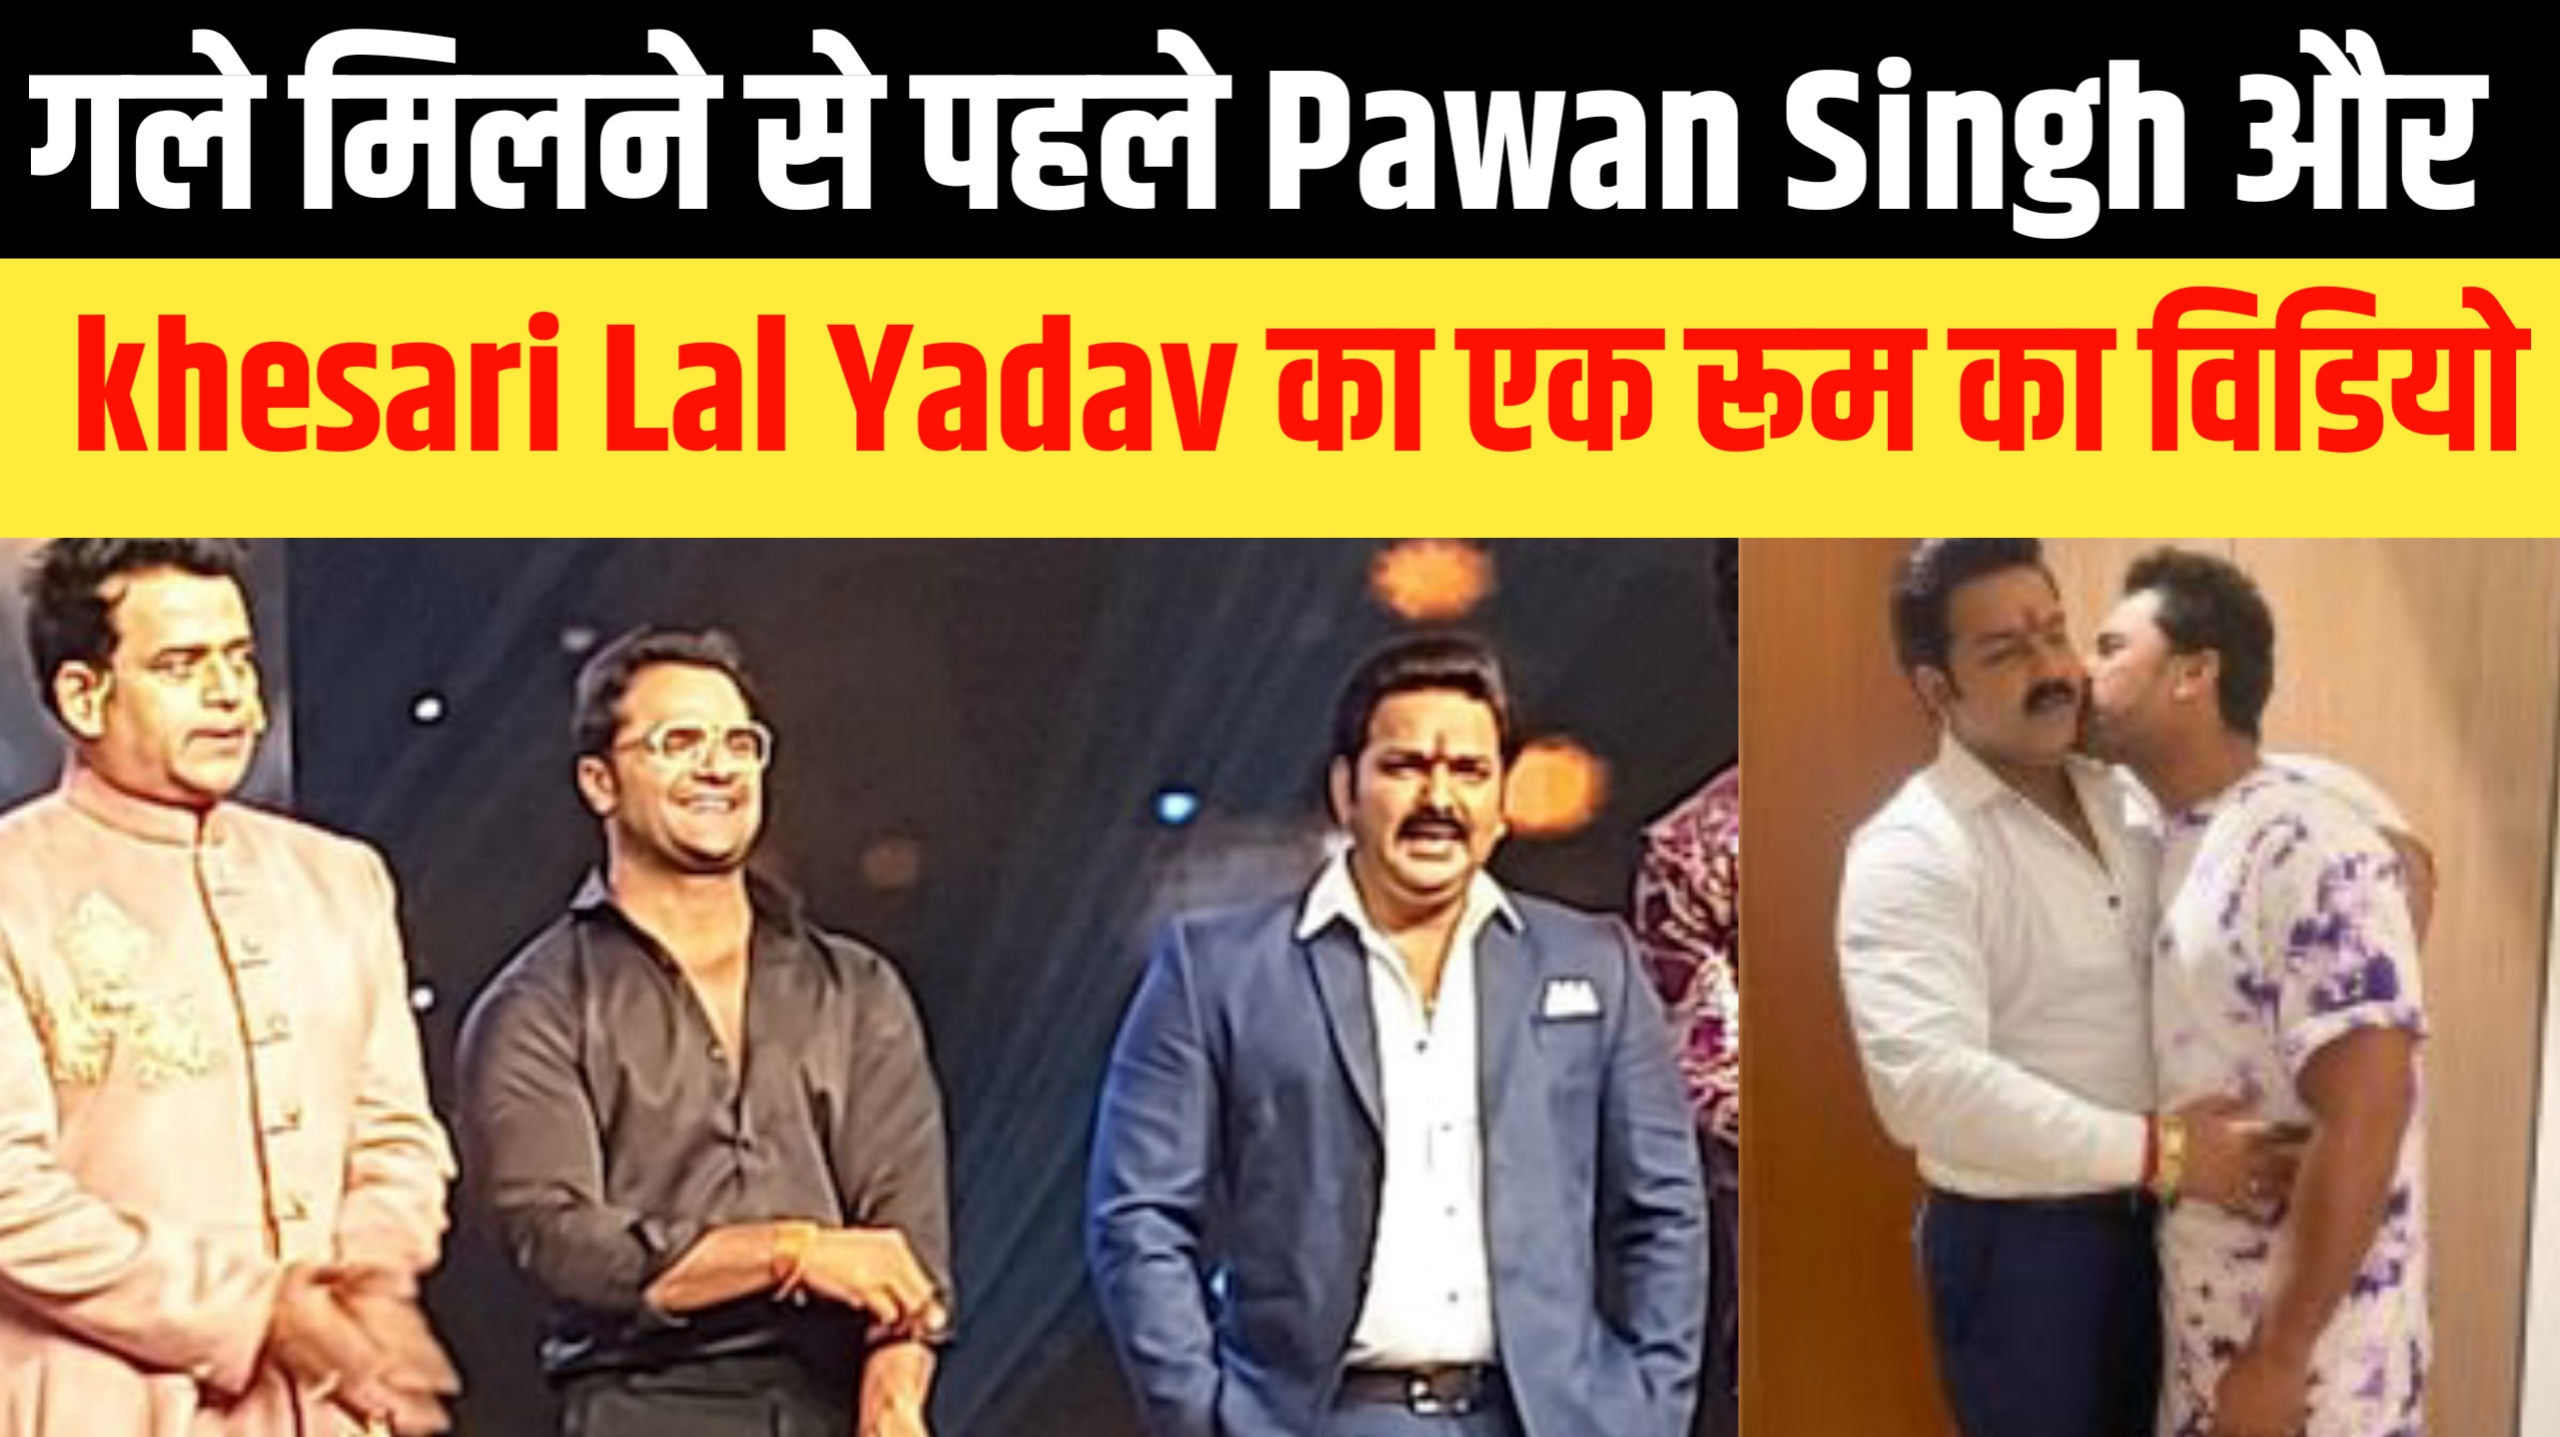 गले मिलने से पहले Pawan Singh और khesari Lal Yadav को शर्म से डूब मारना चाहिए था, जानिए!